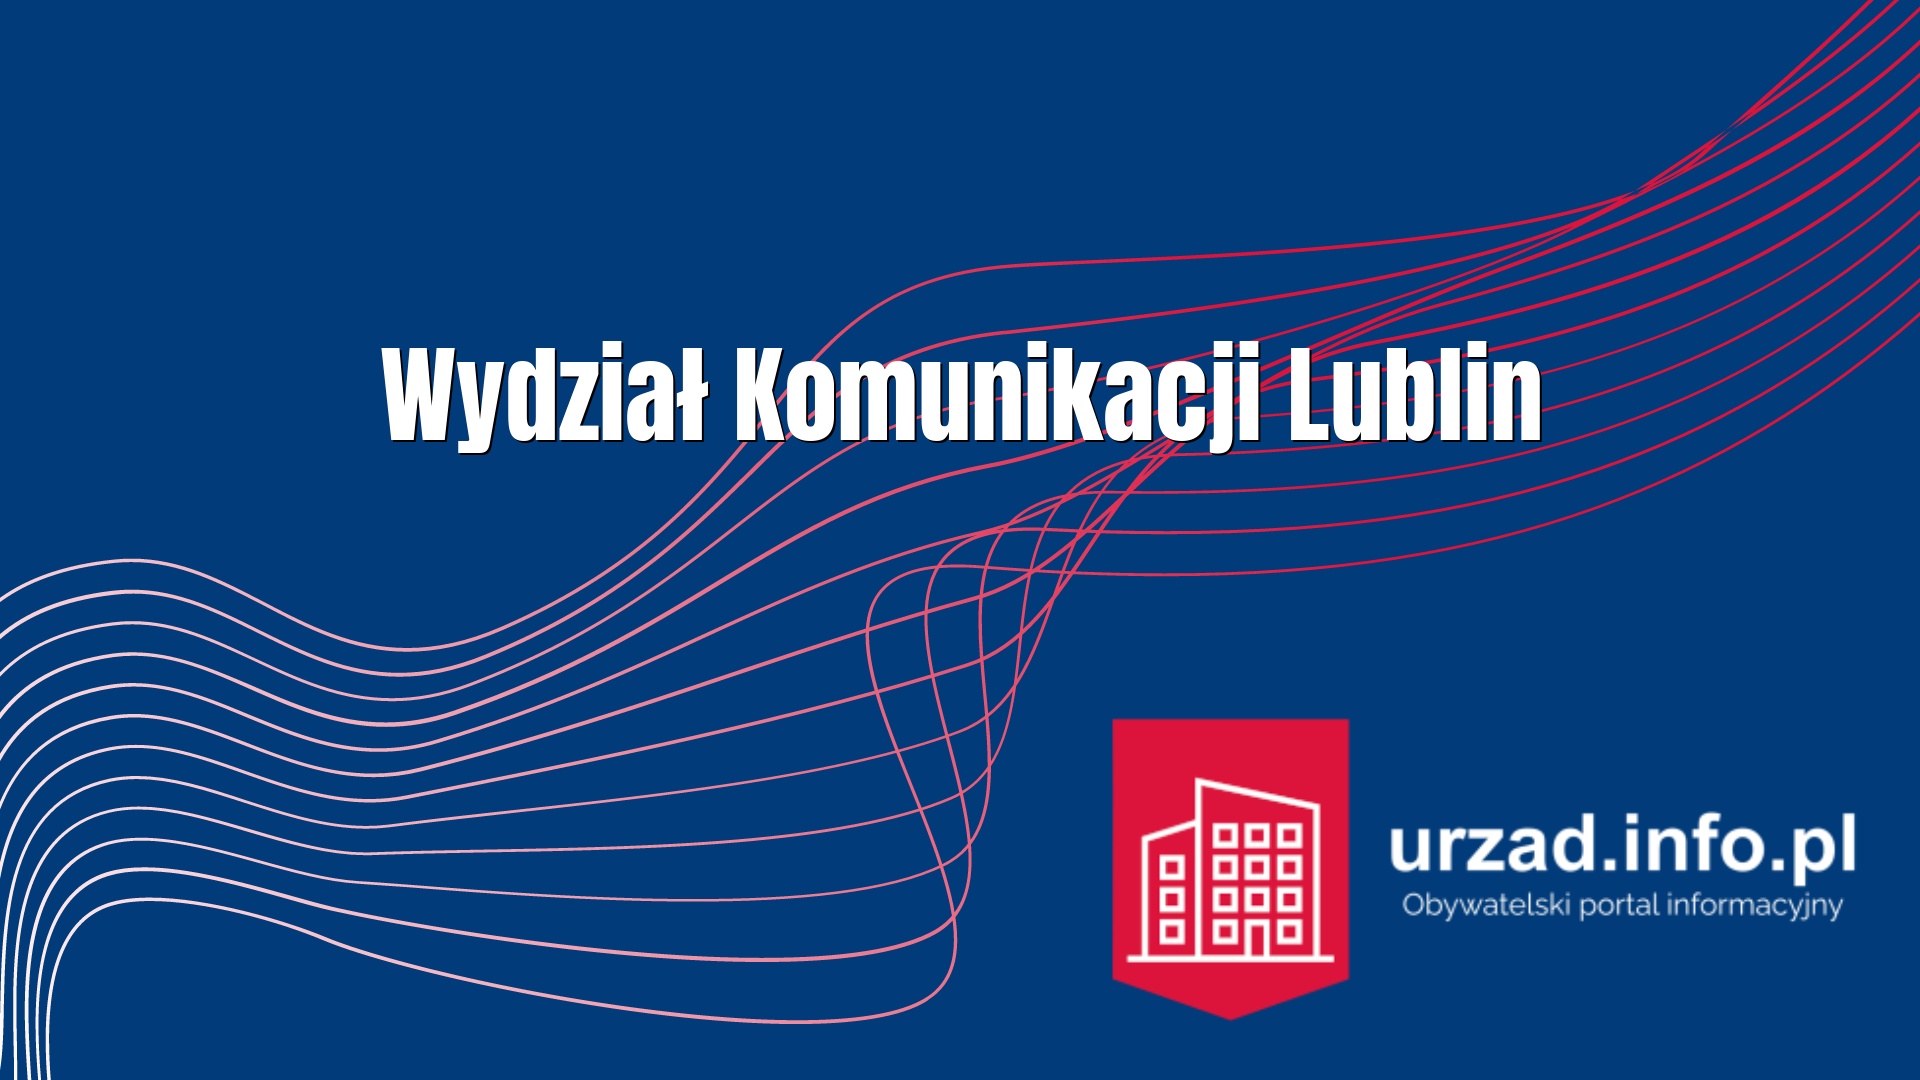 Wydział Komunikacji Lublin